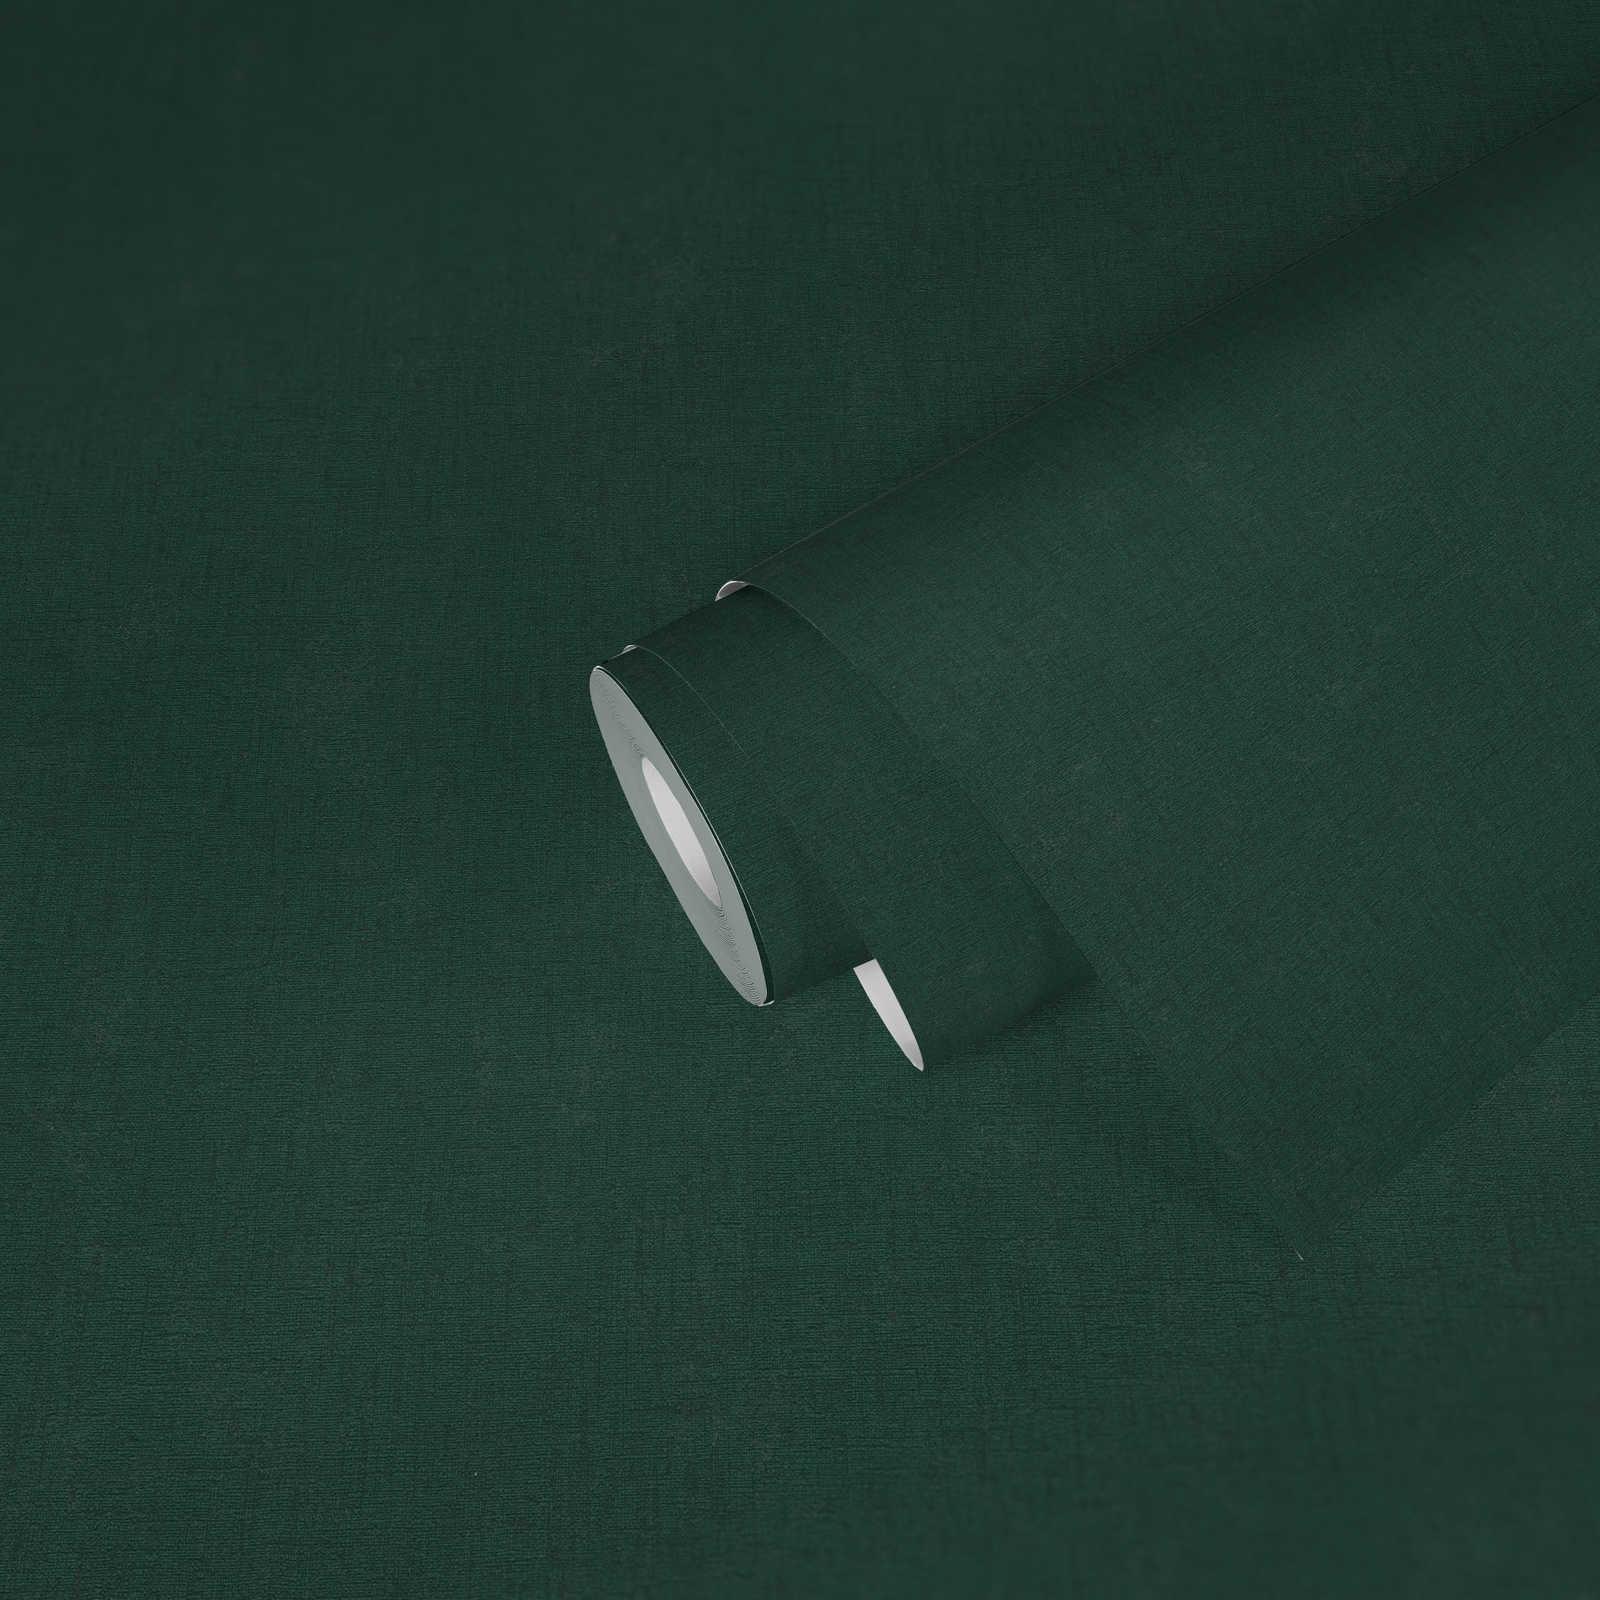             Eenkleurig vliesbehang met een lichte textuur - groen, donkergroen
        